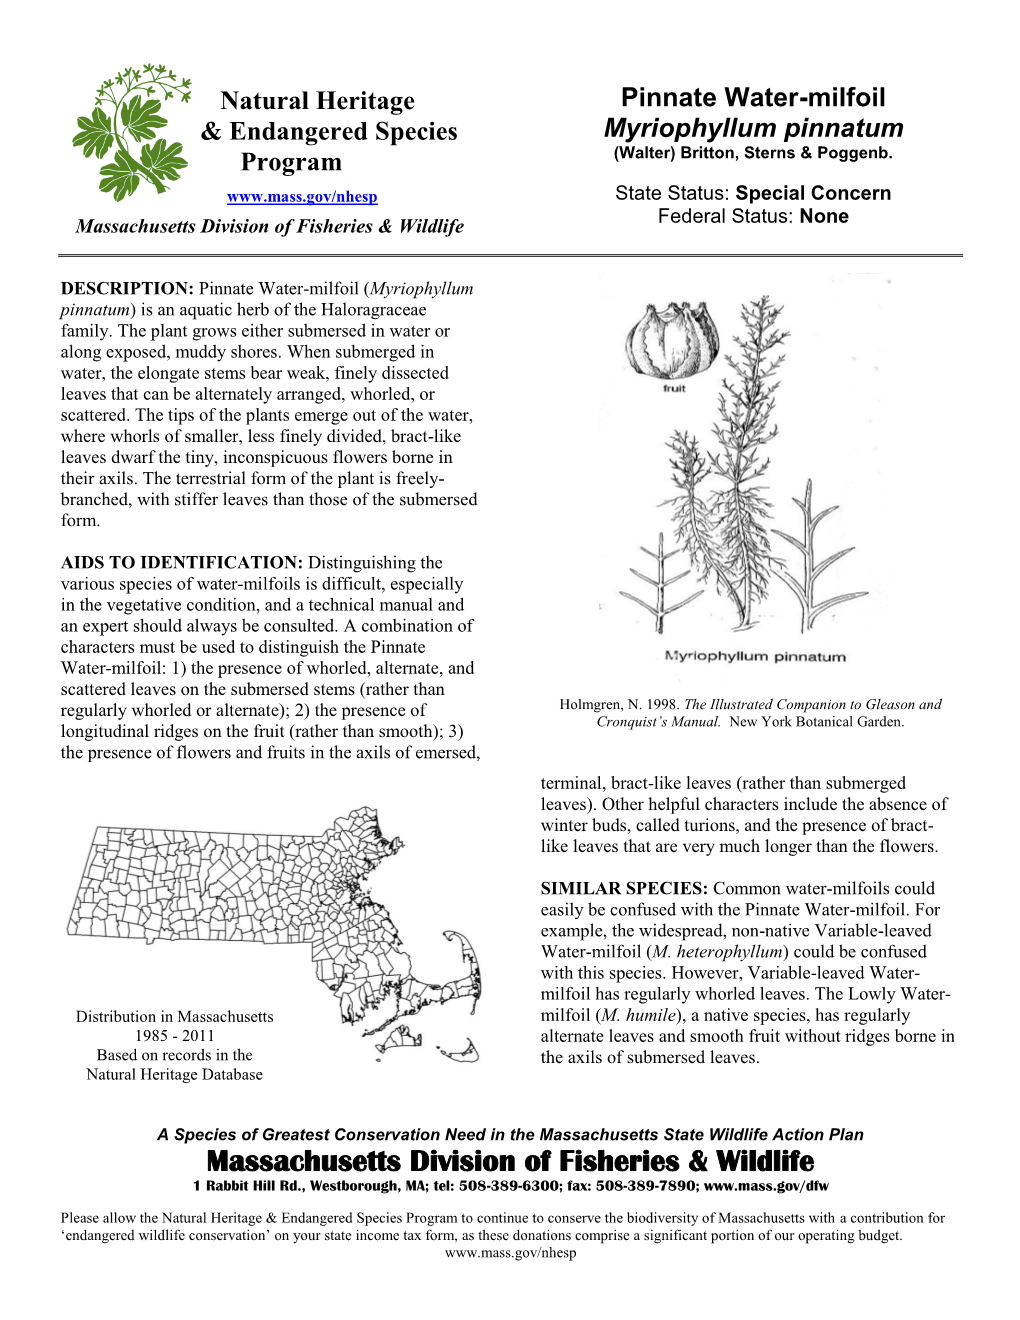 Pinnate Water-Milfoil & Endangered Species Myriophyllum Pinnatum (Walter) Britton, Sterns & Poggenb